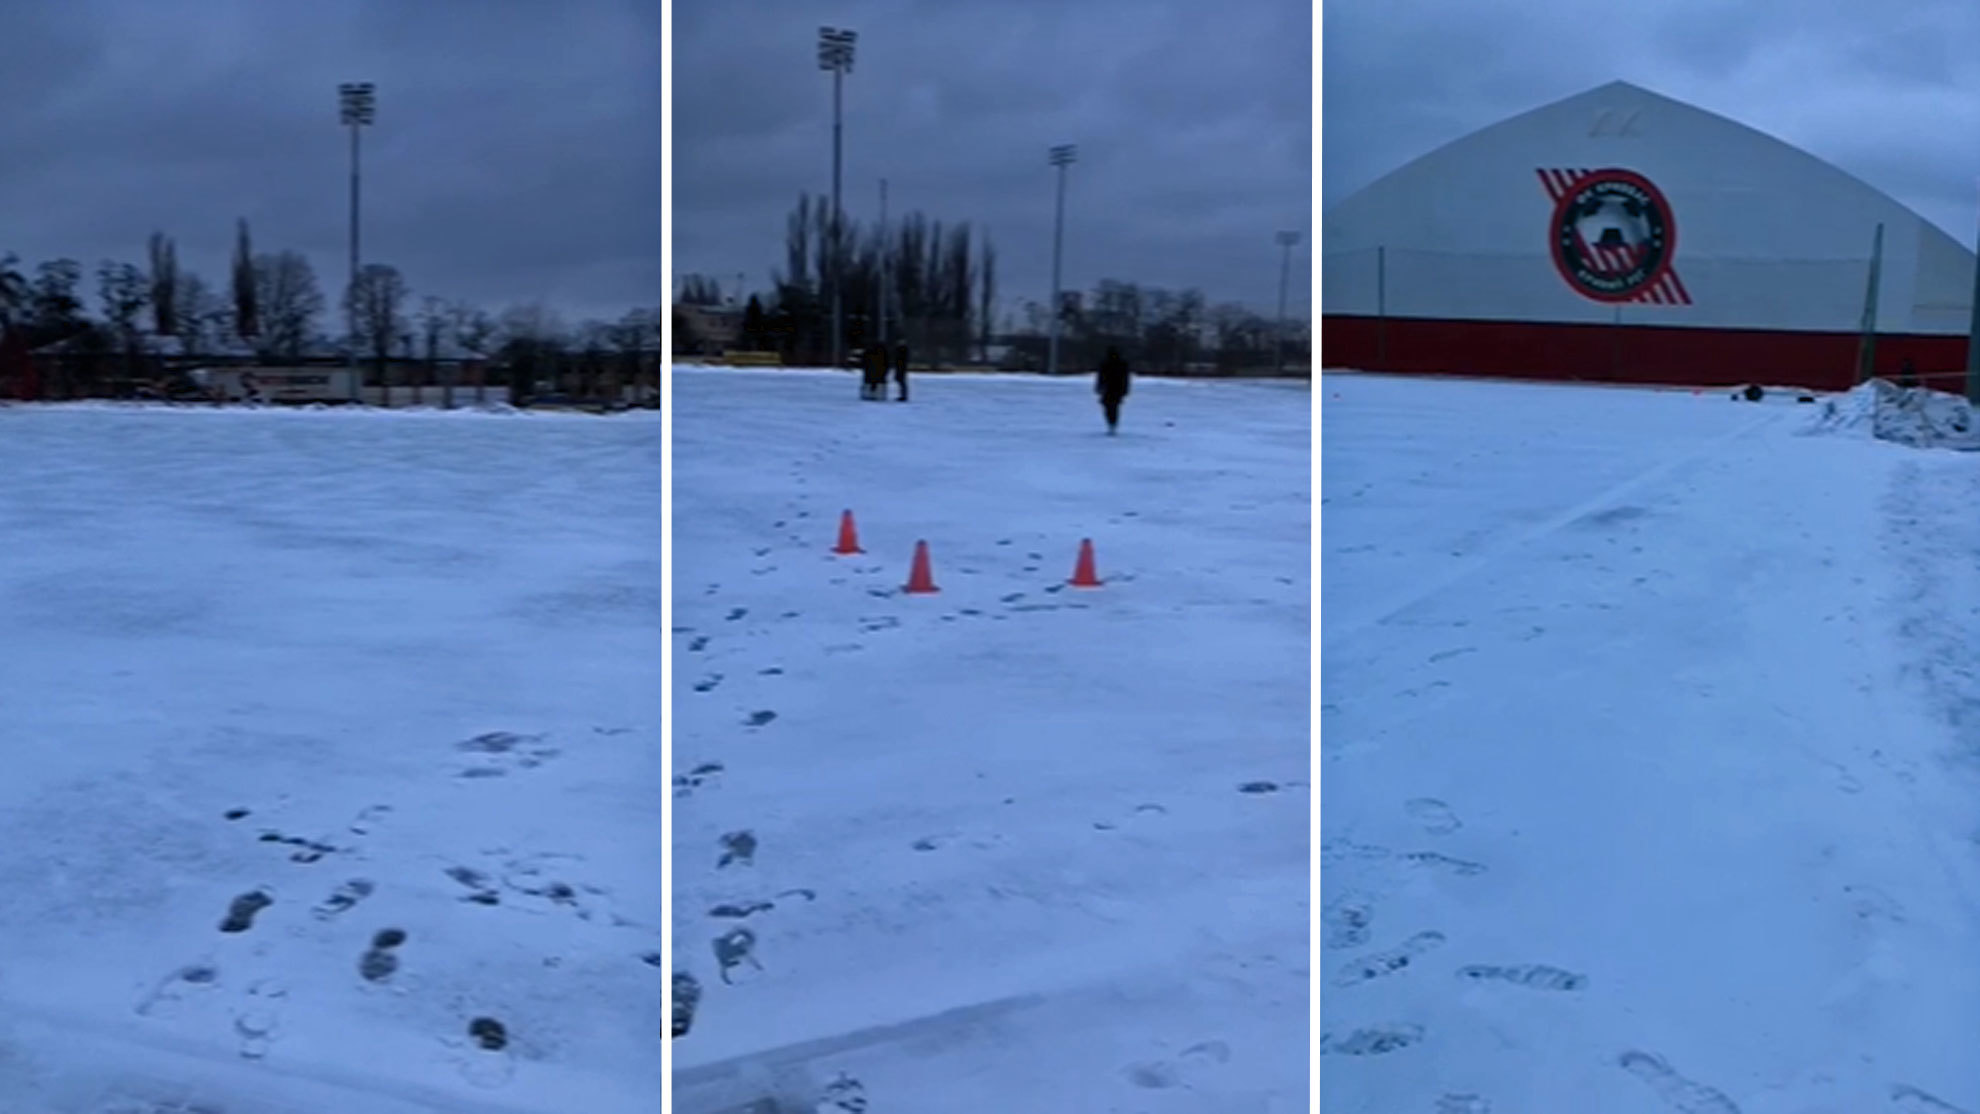 Los campos nevados de la Ciudad Deportiva del FK Kryvbas ya tiene los conos antes de un entrenamiento